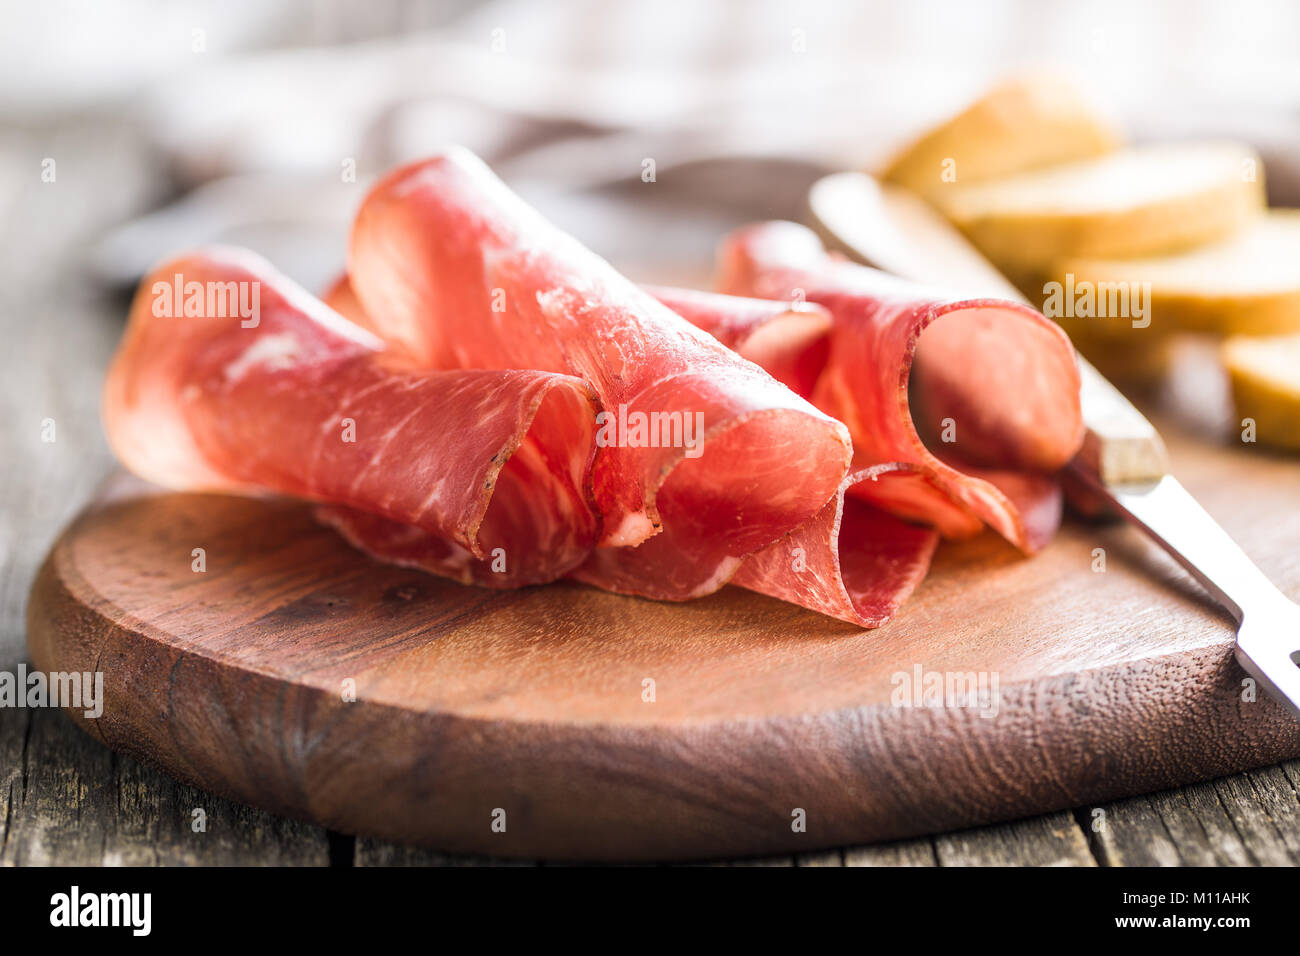 Sliced prosciutto crudo on cutting board. Stock Photo